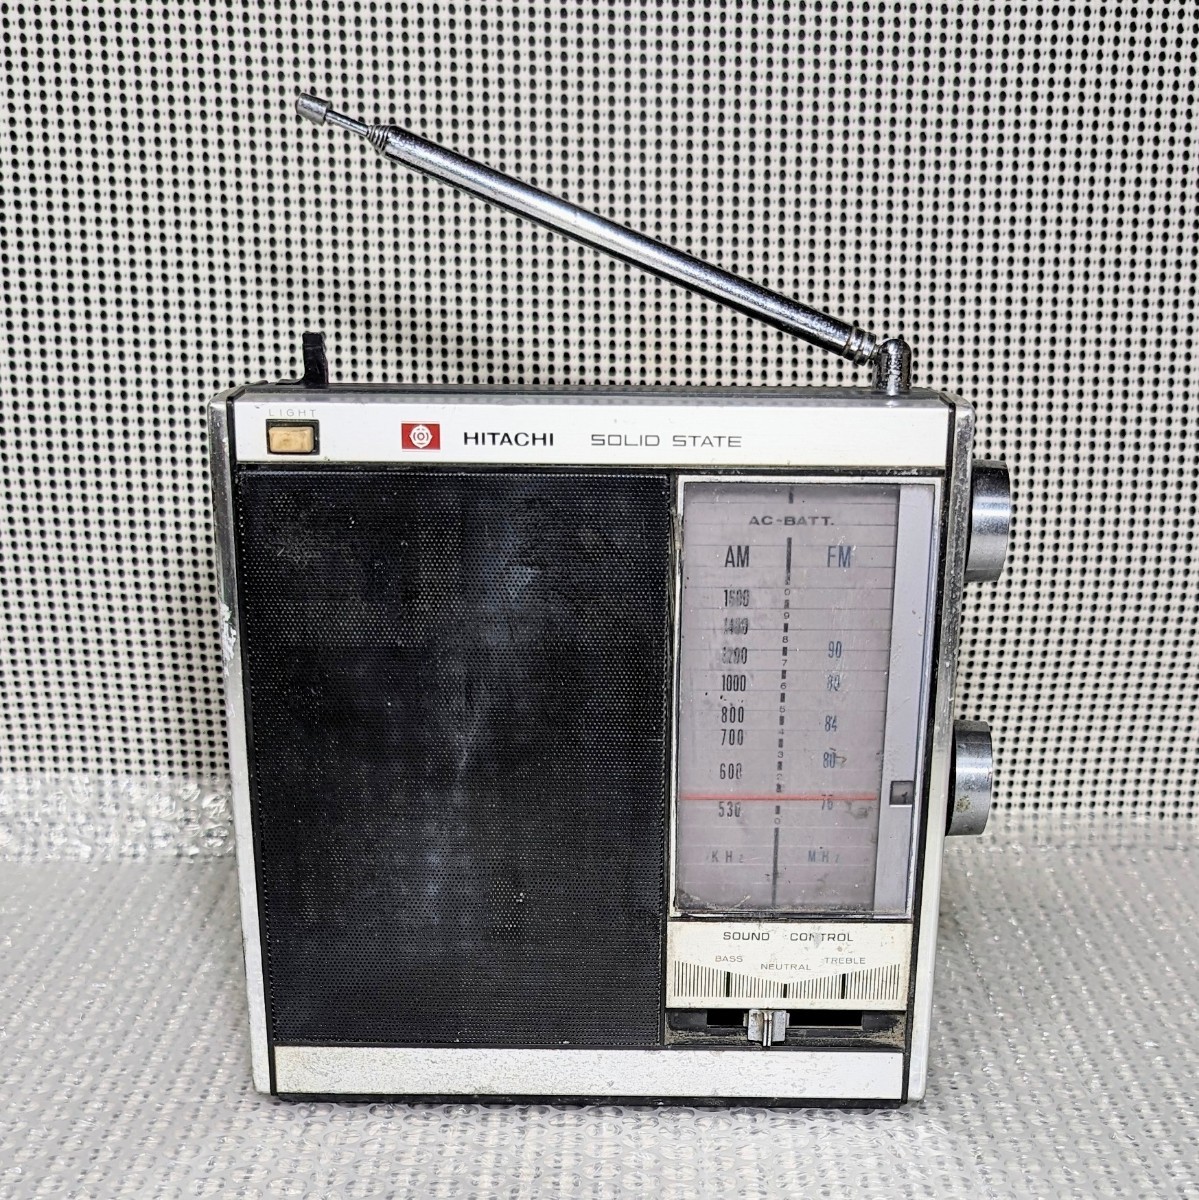  подлинная вещь HITACHI SOLID STATE FM-AM TRANSISTOR RADIO KH-1045 Hitachi FM-AM транзистор радио KH-1045 работоспособность не проверялась текущее состояние товар 